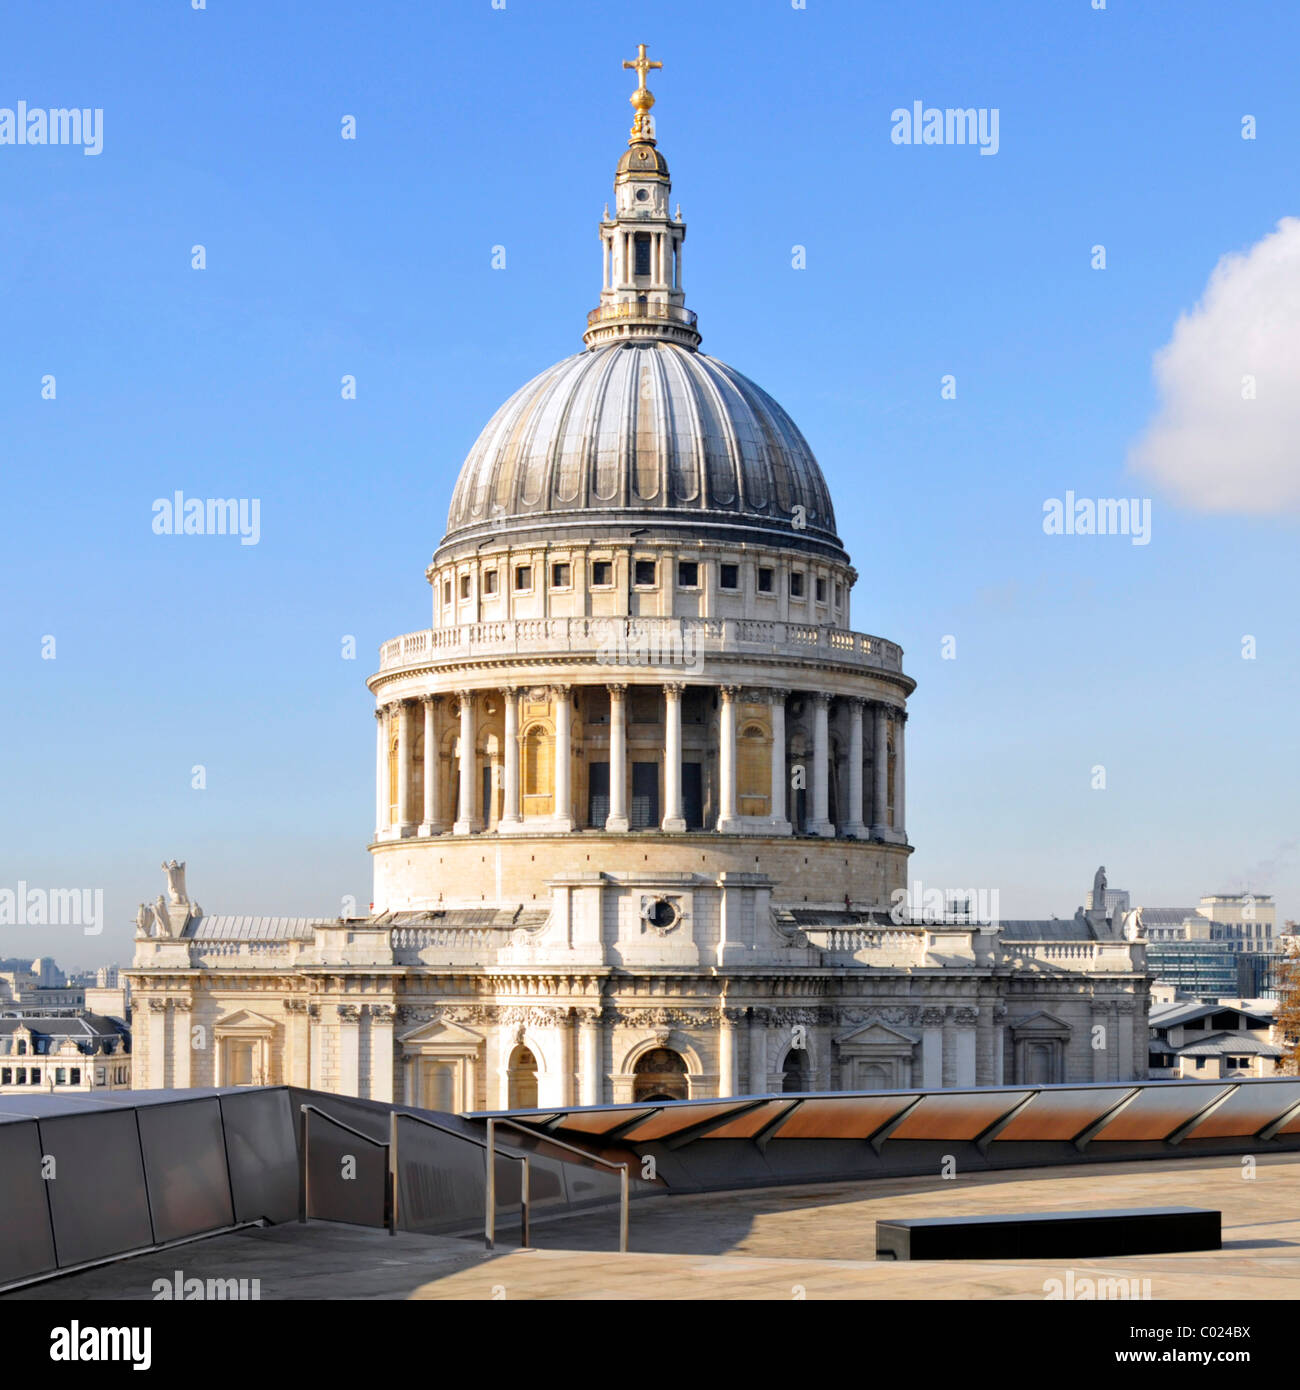 Eine neue Änderung Einkaufszentrum Dachterrasse und Kuppel des historischen iconic St Pauls Cathedral Europäische Kirche Sehenswürdigkeiten blauer Himmel Tag in der City von London Großbritannien Stockfoto